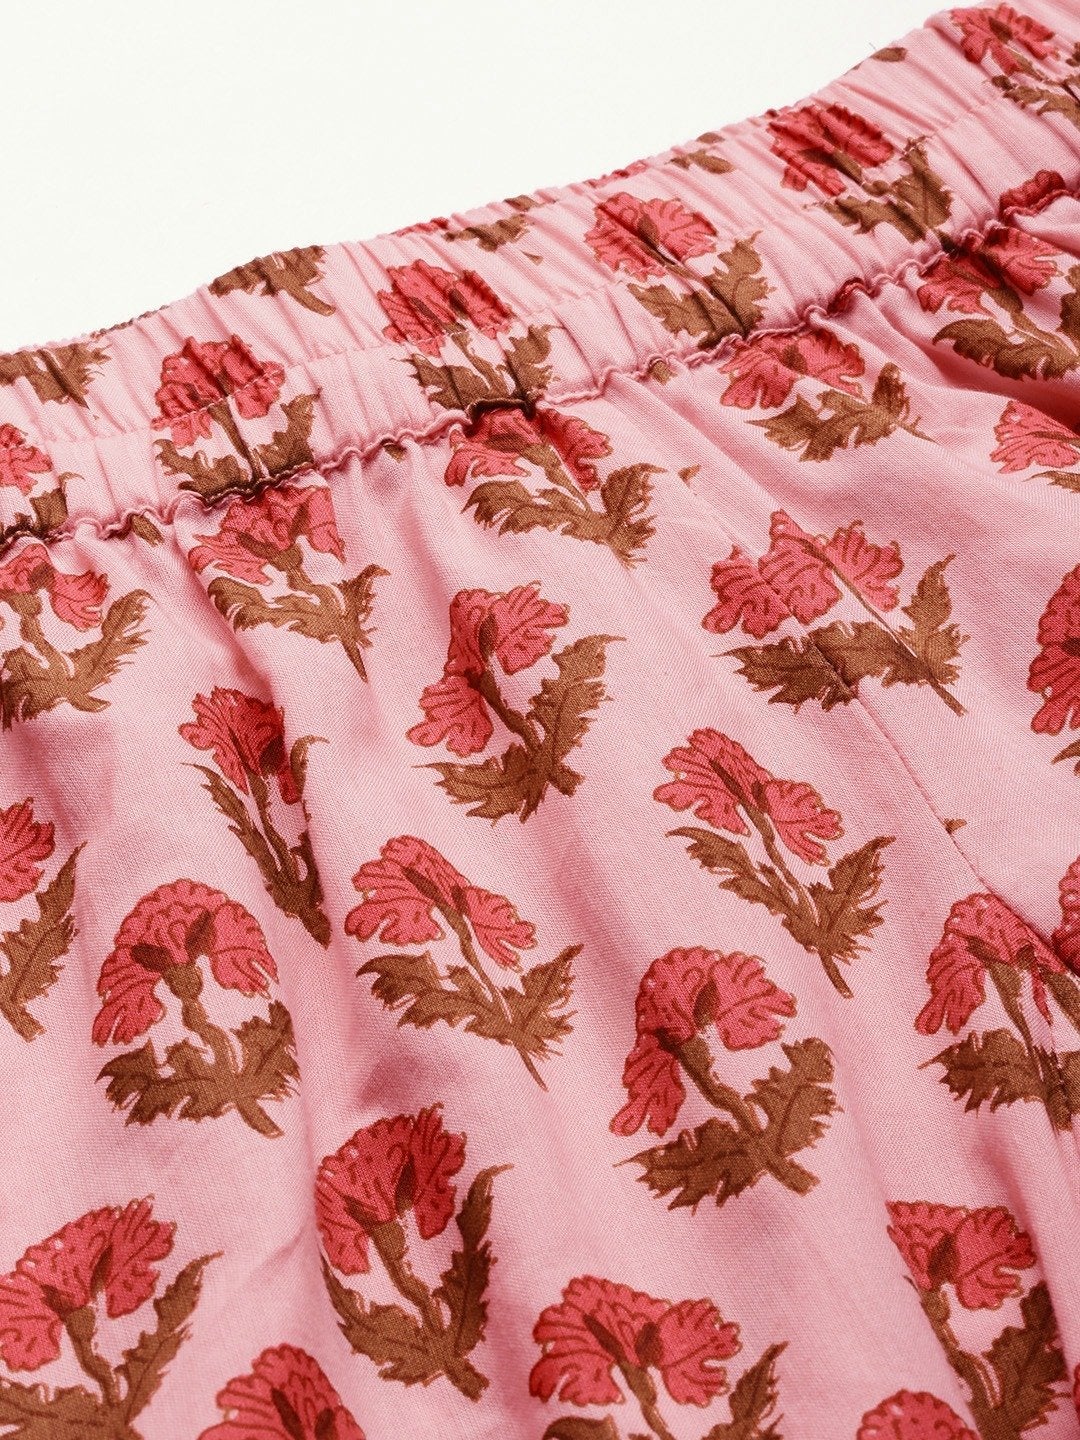 Wahe-NOOR Women's Pink Cotton Loungewear /Nightwear Set - Distacart